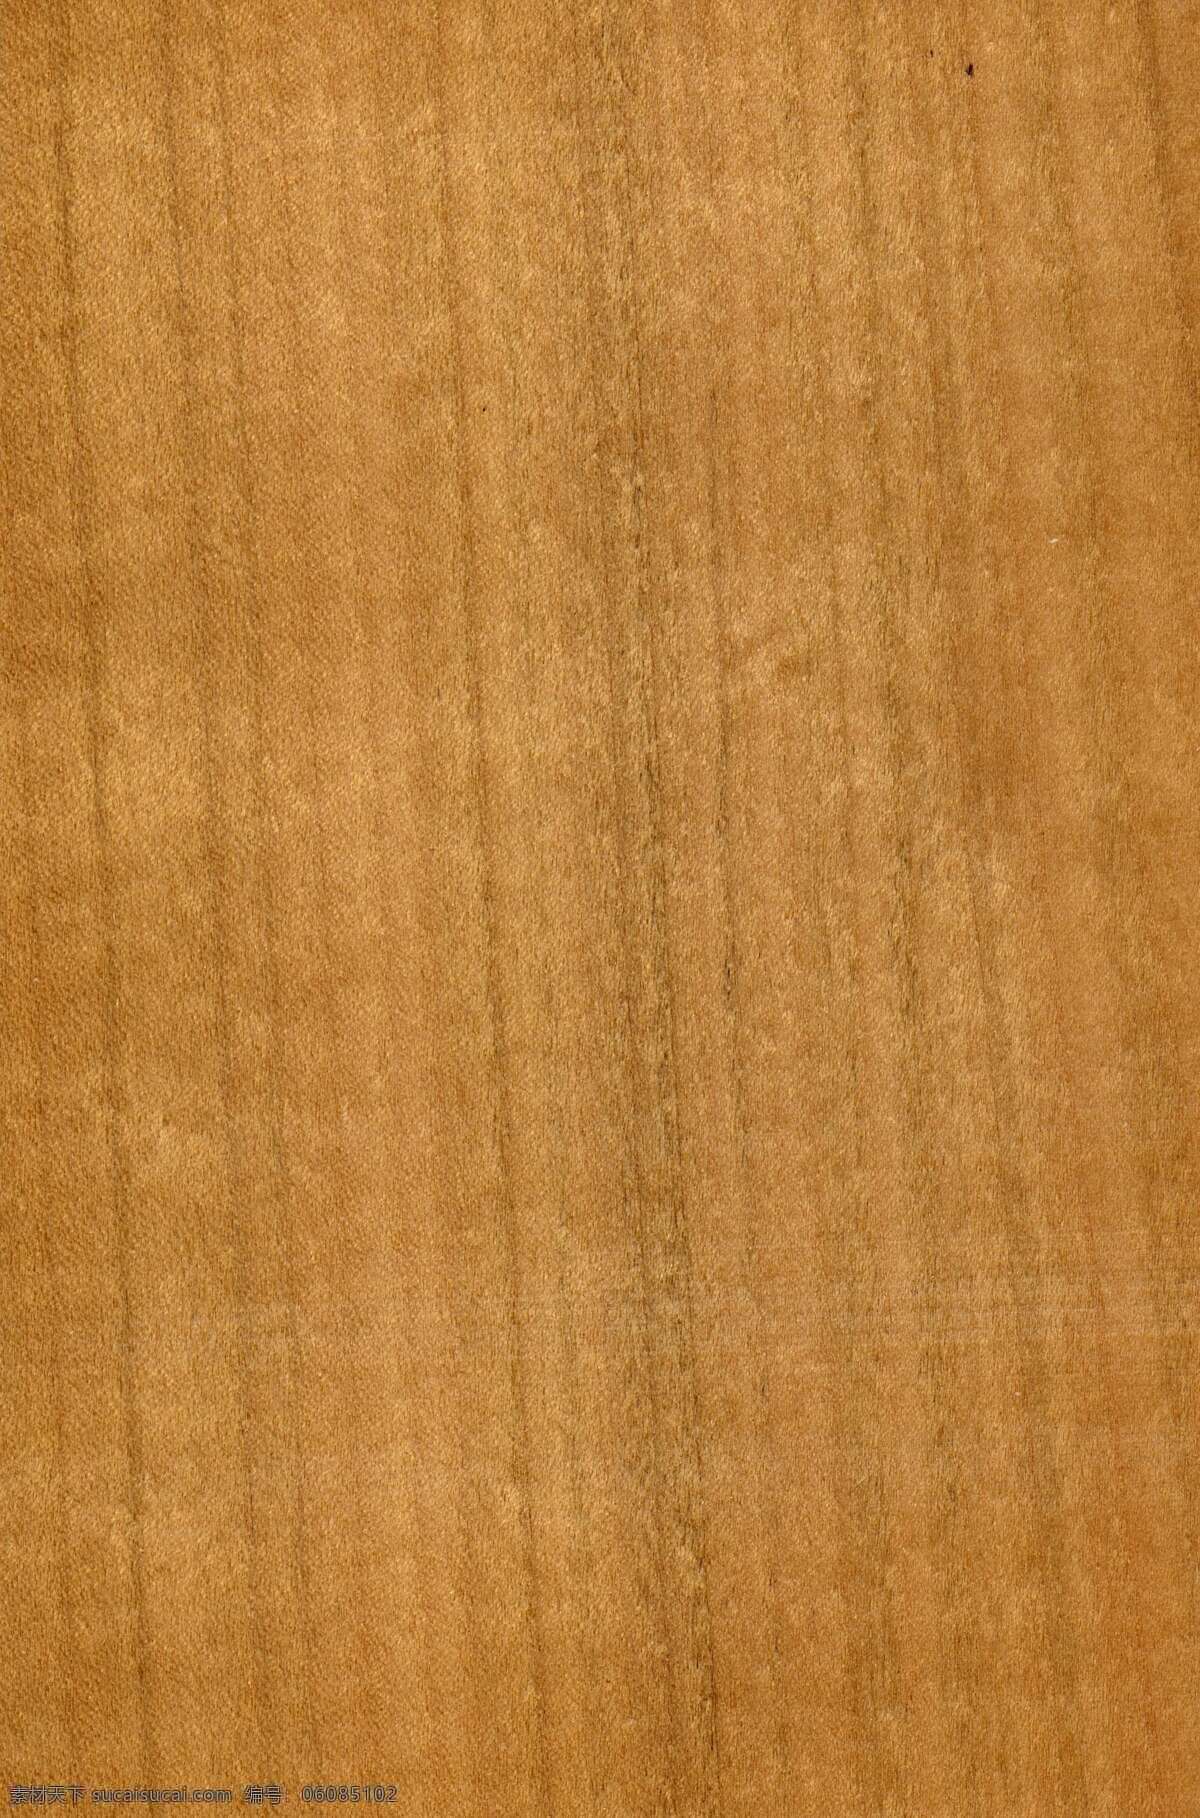 地板 木板 纹理 高清 木纹 材质 贴图 dmax 谷 建 室内设计 石 地砖 石材 3dmax 贴